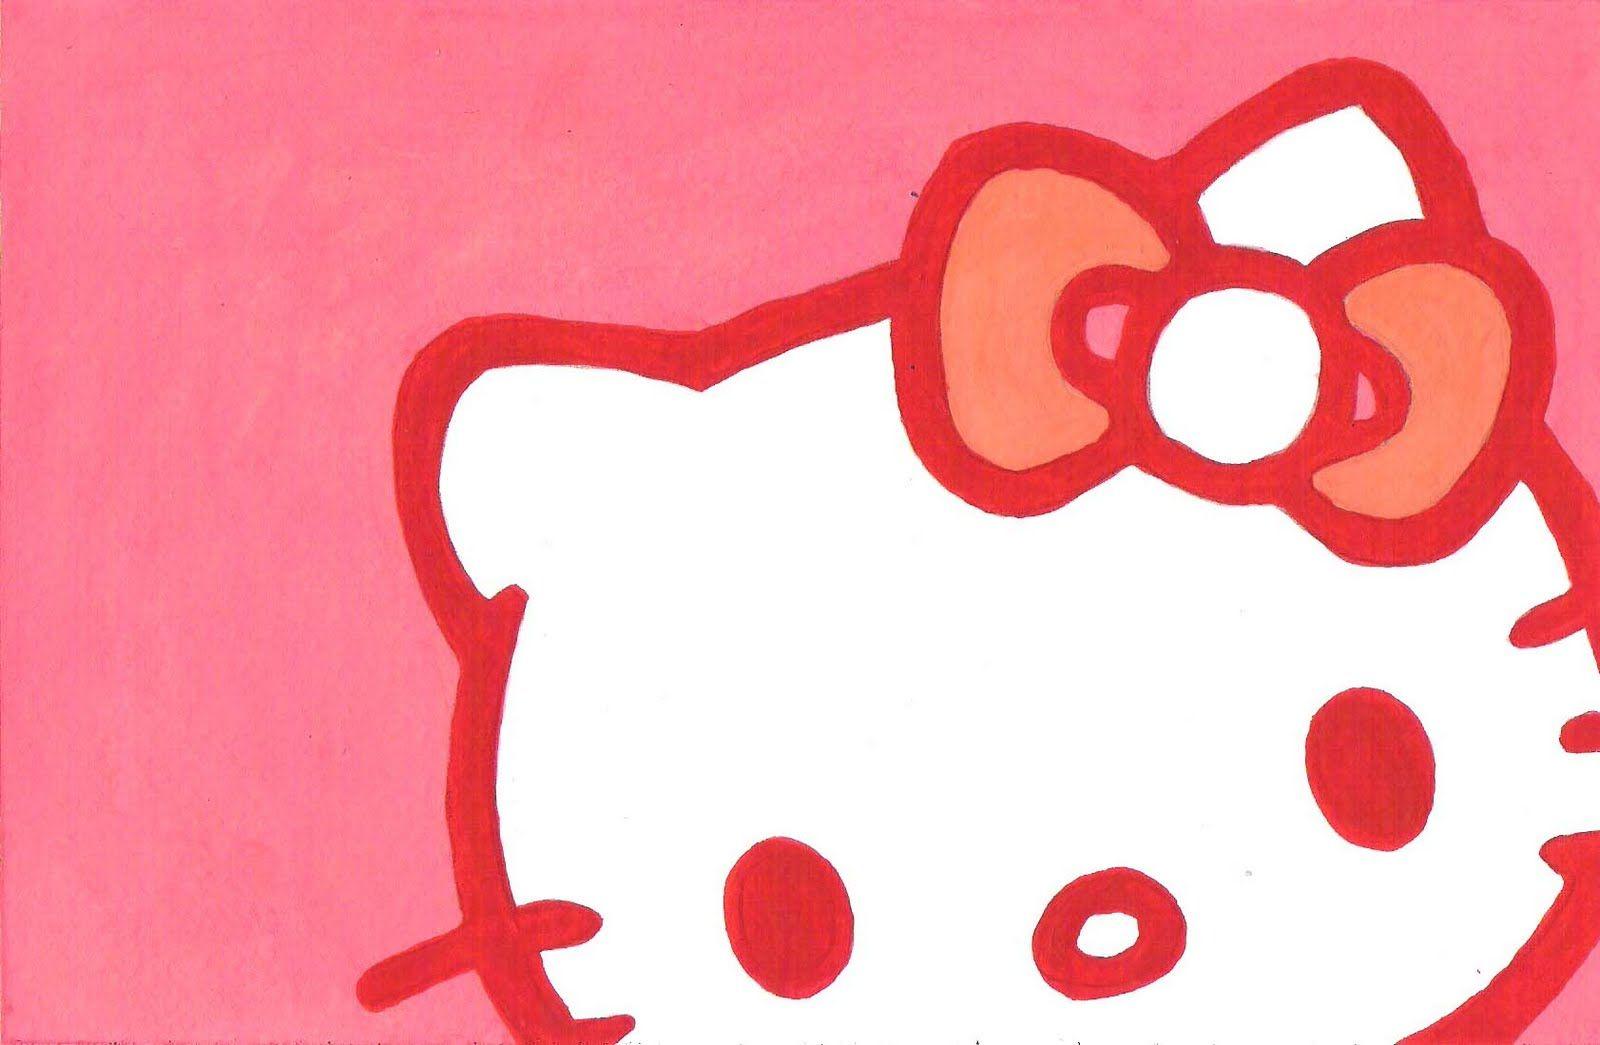 Hello Kitty Aesthetic Wallpapers HD  PixelsTalkNet